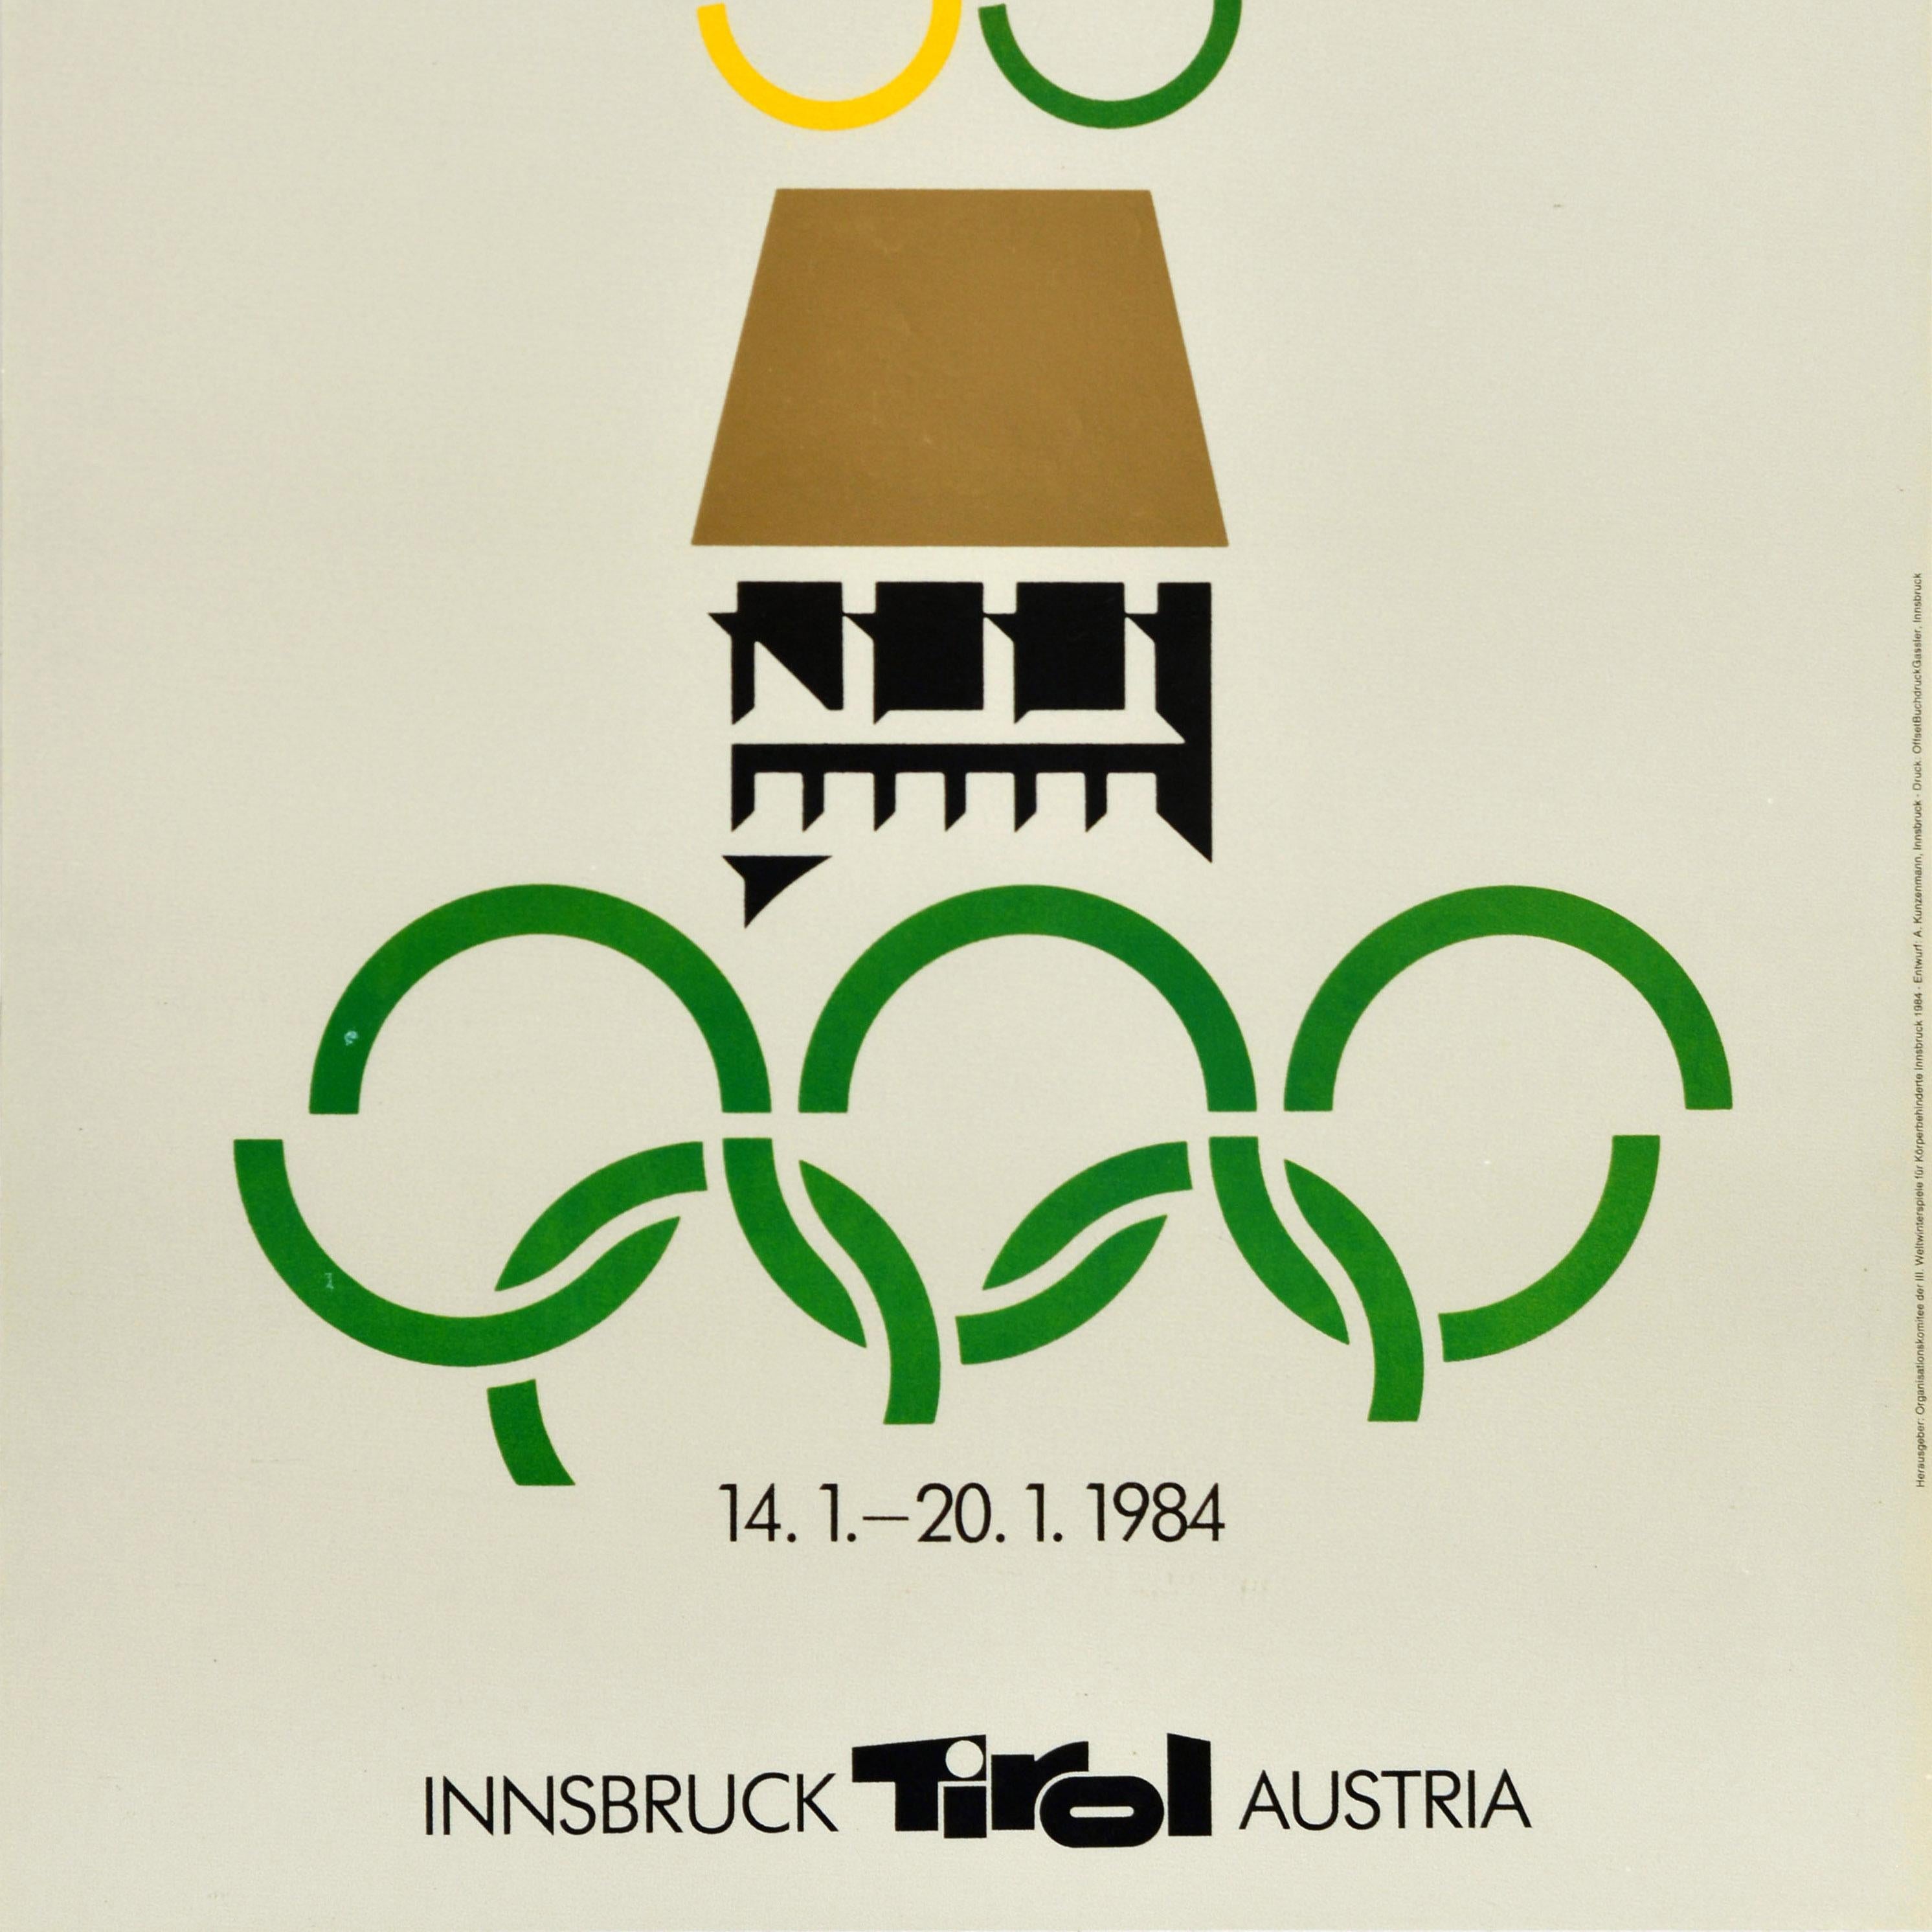 Affiche sportive originale vintage des Jeux Olympiques pour les Jeux Paralympiques d'hiver qui se sont déroulés à Innsbruck, Tyrol, Autriche, du 14 au 20 janvier 1984, avec le texte en allemand, anglais et français - III Weltwinterspiele fur